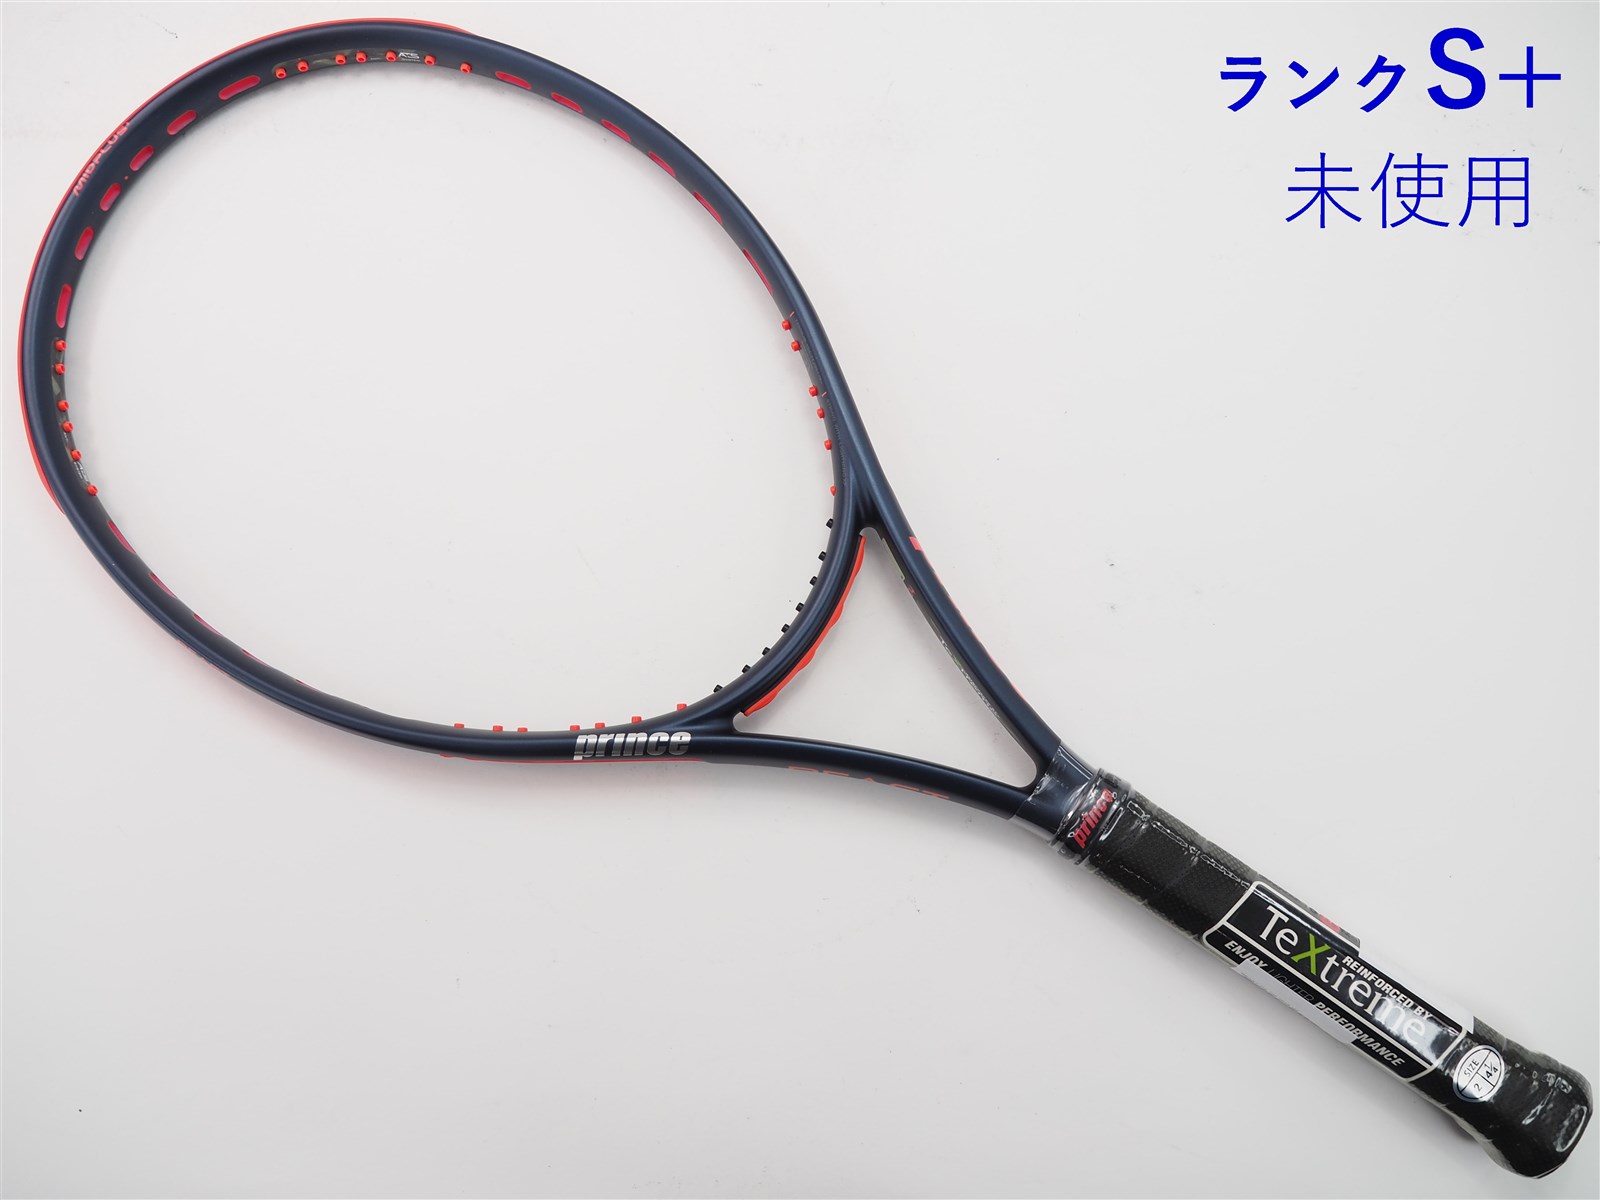 テニスラケット プリンス ビースト オースリー 104 2019年モデル (G1